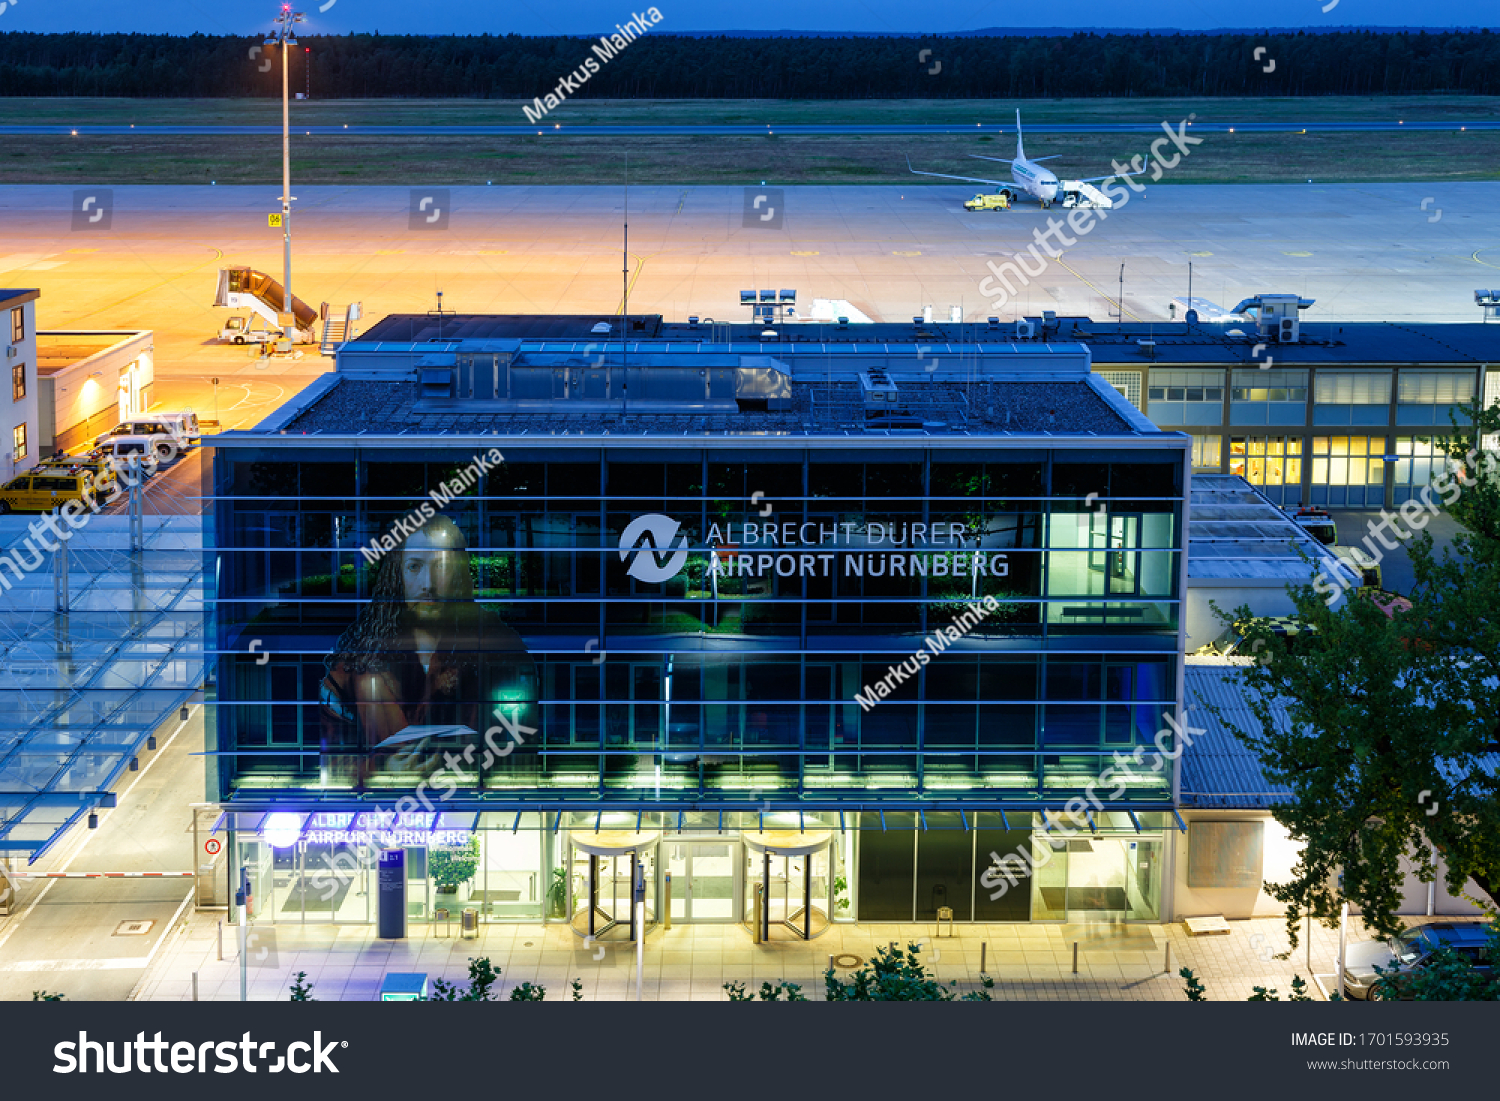 Nuremberg airport Images, Stock Photos & Vectors   Shutterstock